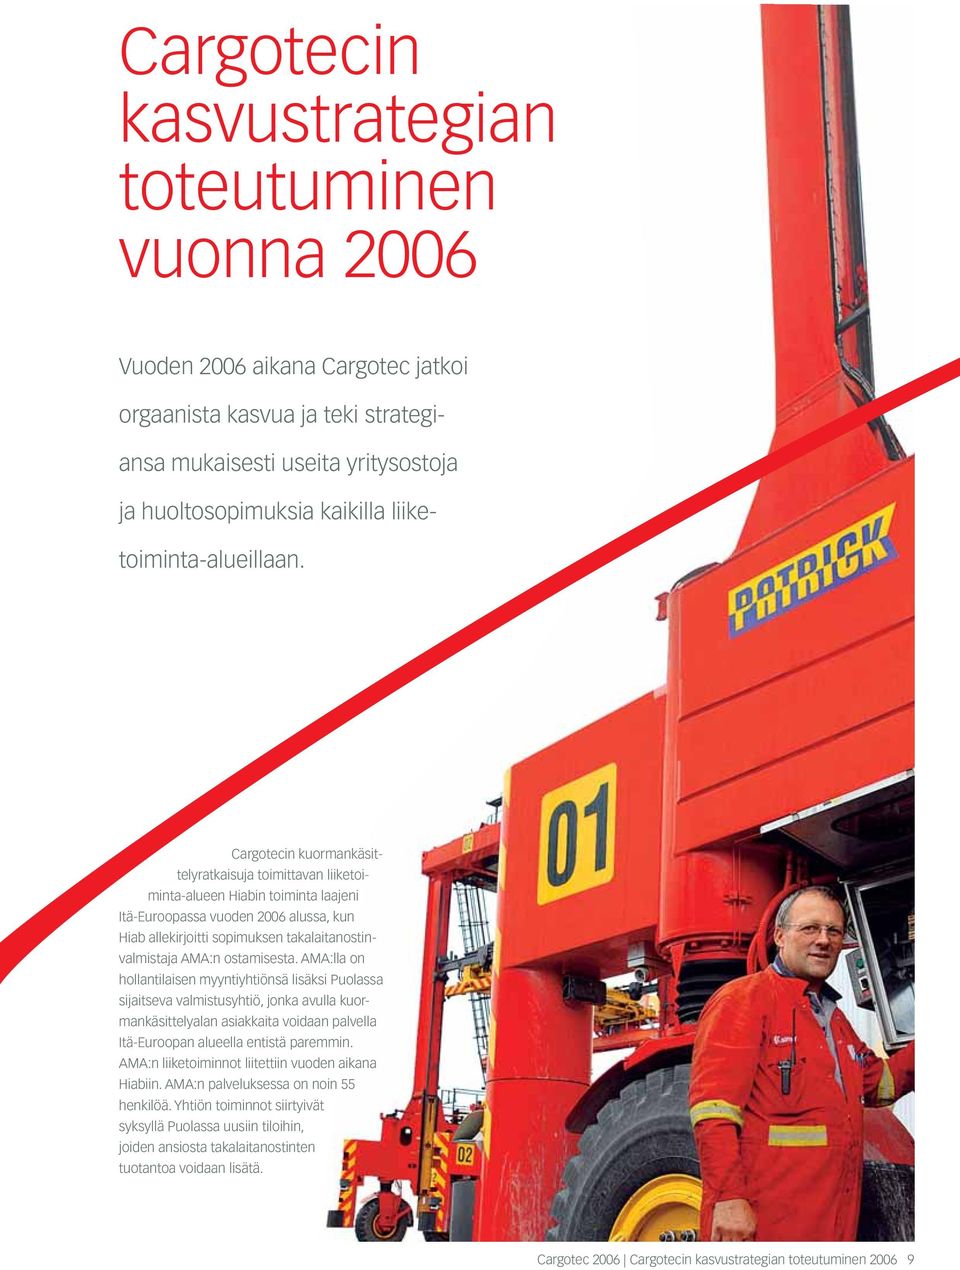 Cargotecin kuormankäsittelyratkaisuja toimittavan liiketoiminta-alueen Hiabin toiminta laajeni Itä-Euroopassa vuoden 2006 alussa, kun Hiab allekirjoitti sopimuksen takalaitanostinvalmistaja AMA:n